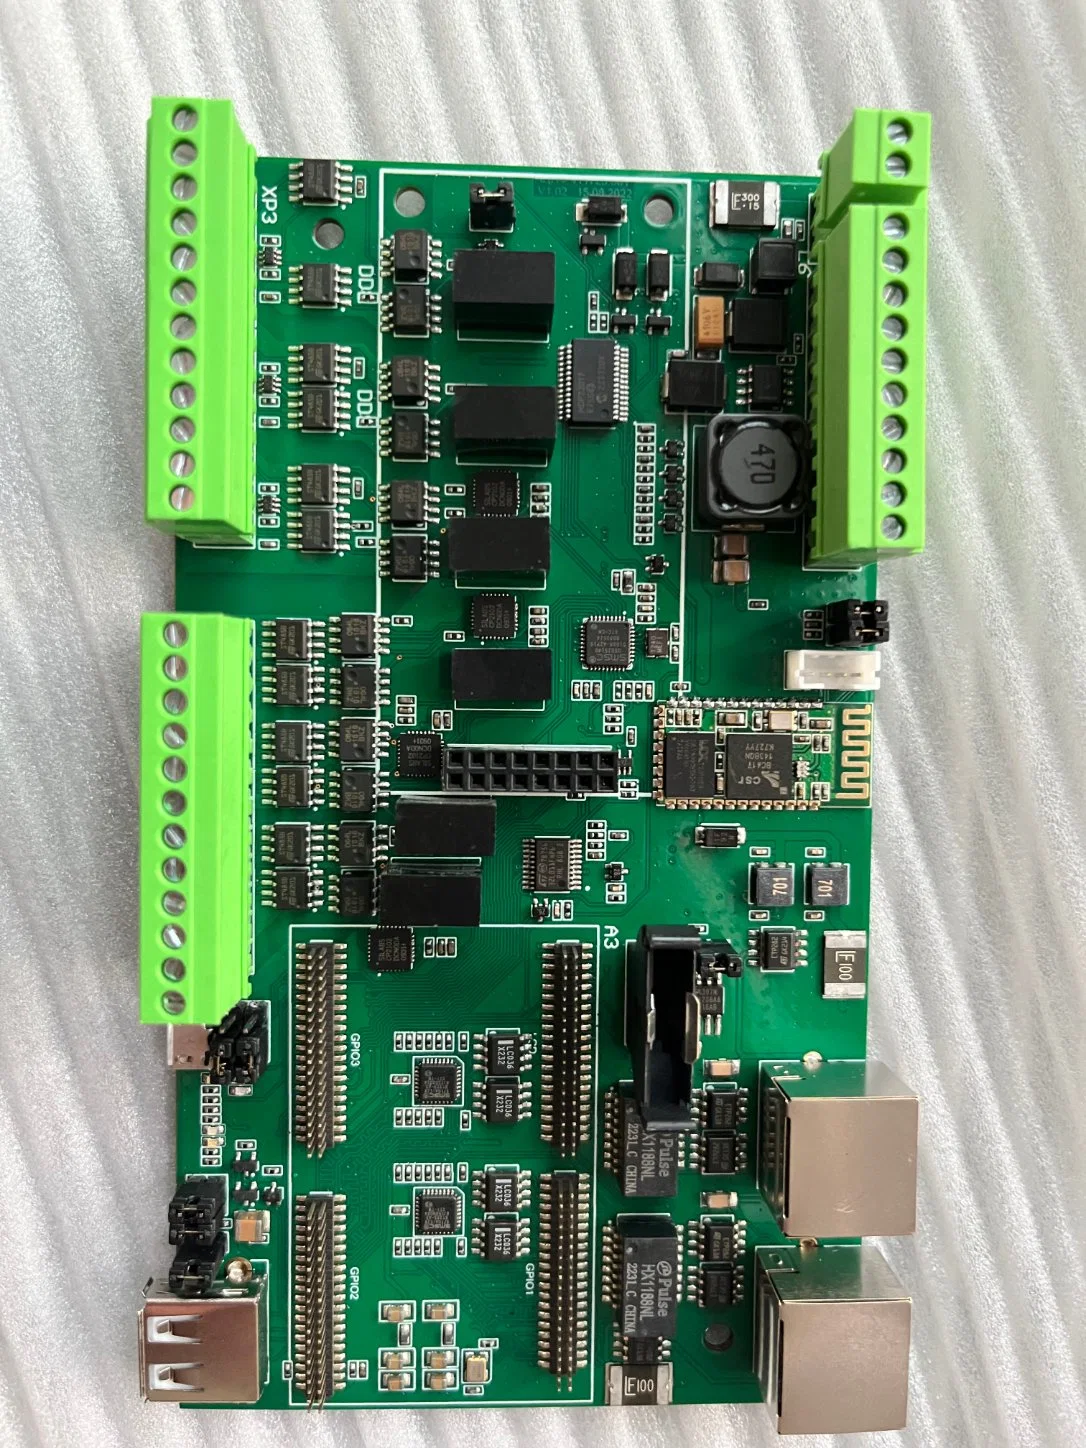 Gerber File PCB Assembly Fabricantes de placas de circuitos PCB Fabricación de placas de circuitos impresos